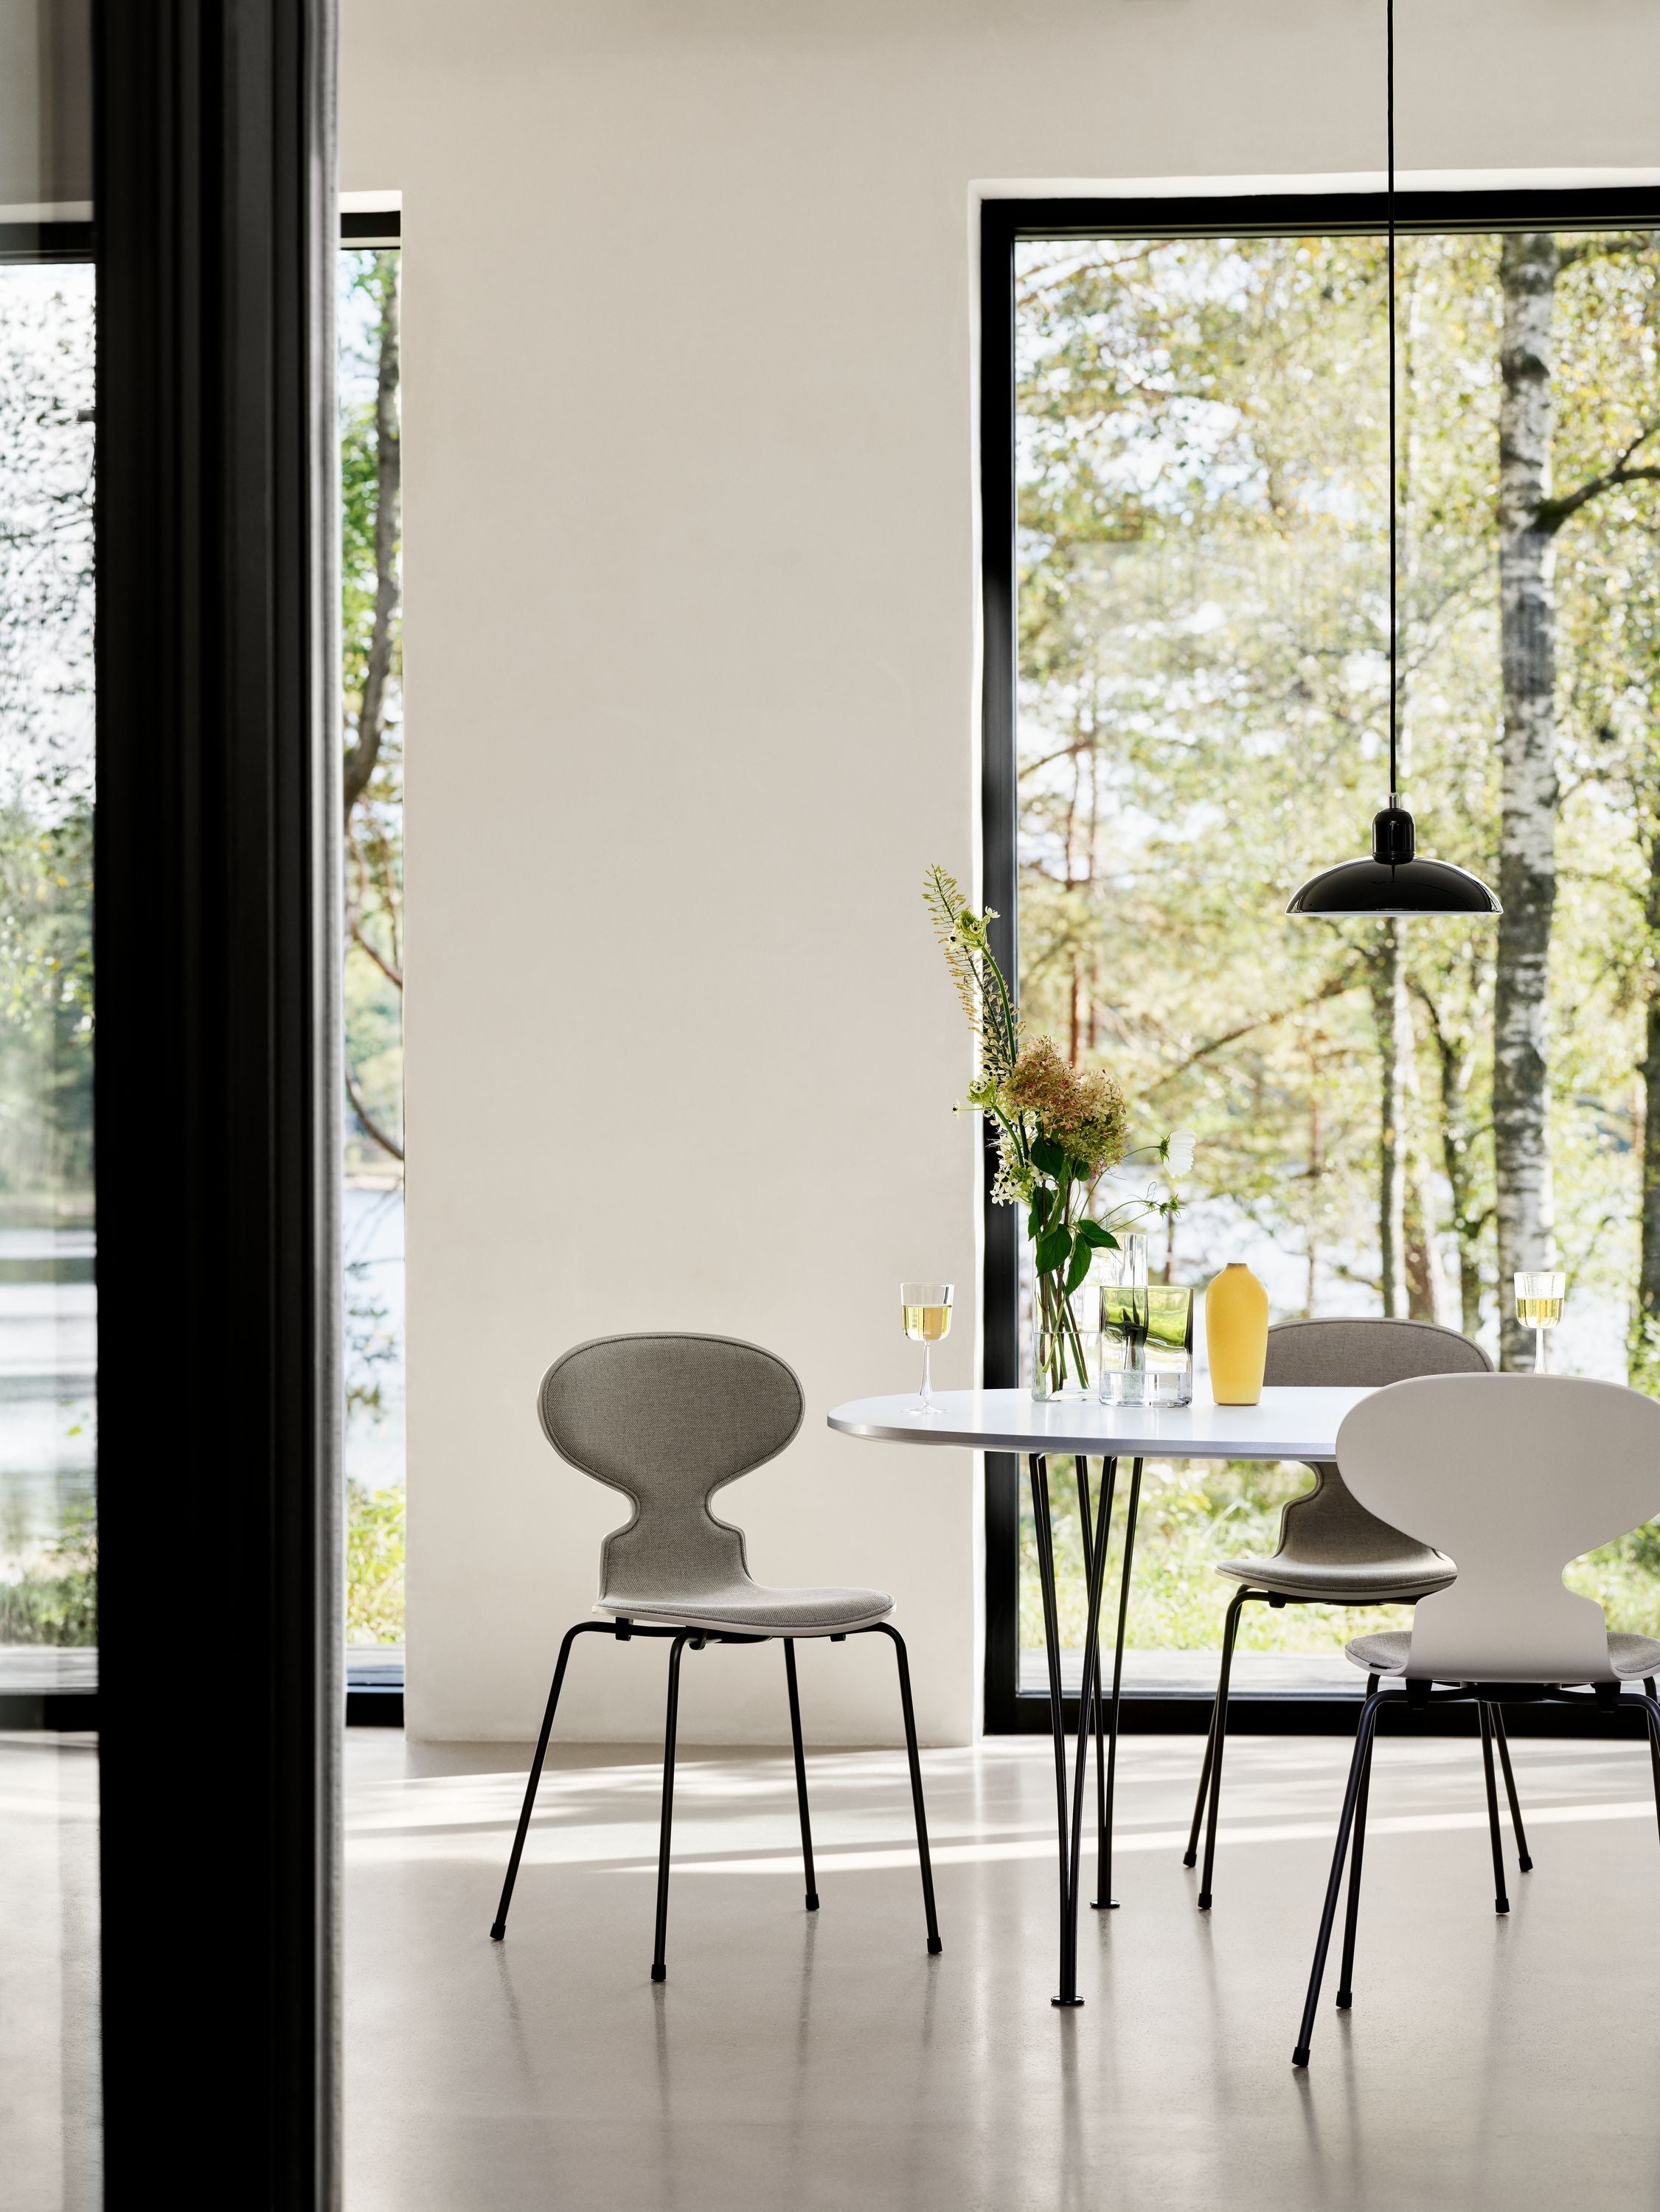 Fritz Hansen 3101 Ant stol foran polstret, skal: farvet finer sort, polstring: vanir tekstil sort/grå, base: stål/krom